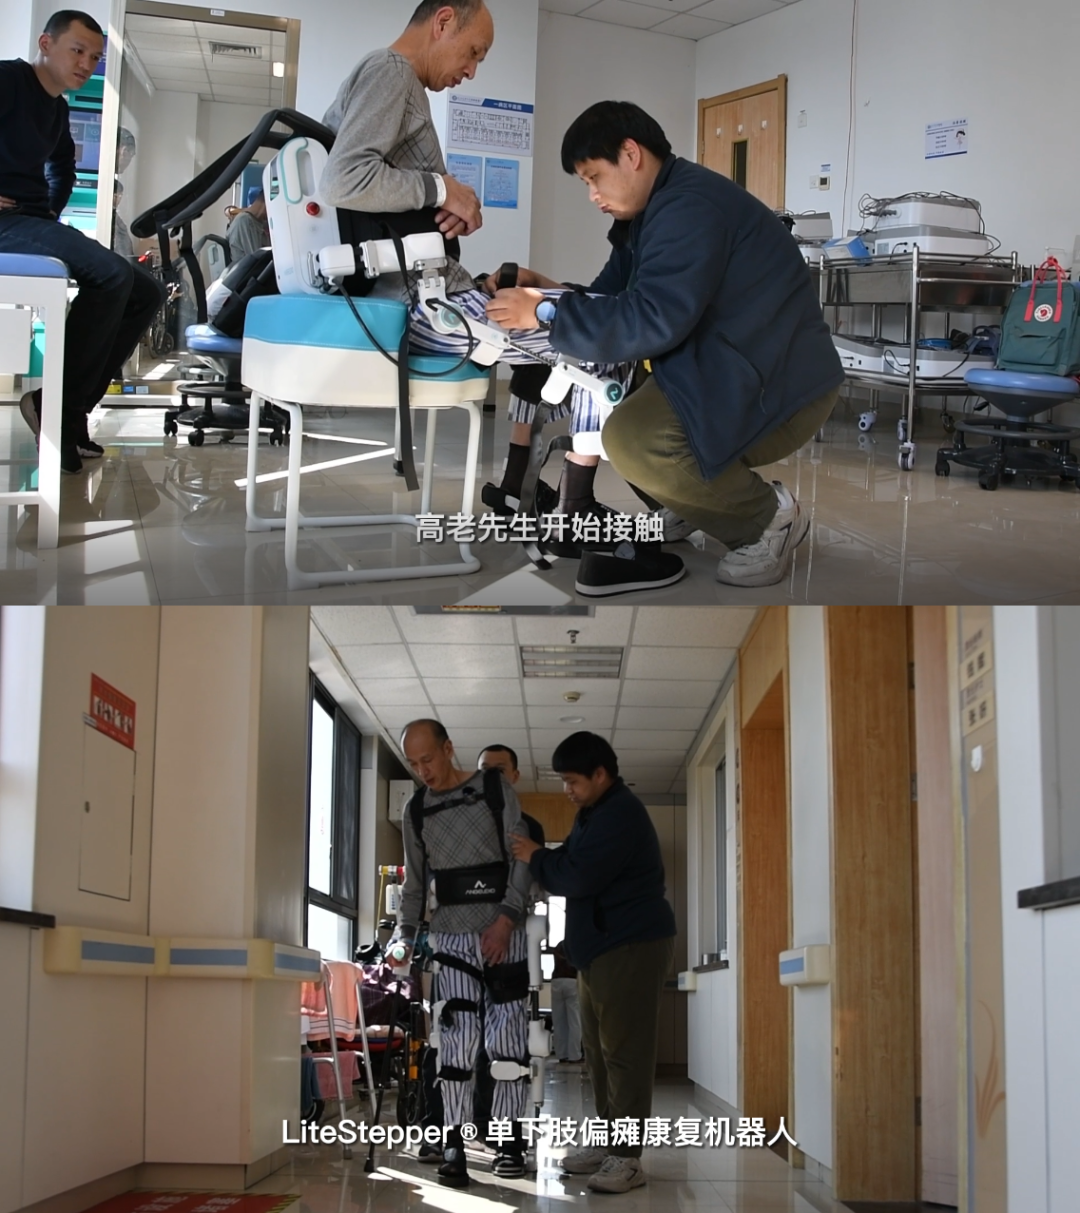 【教你一招】偏瘫患者上下肢抗痉挛如何康复 - 三级康复网络 - 兰溪市中医院